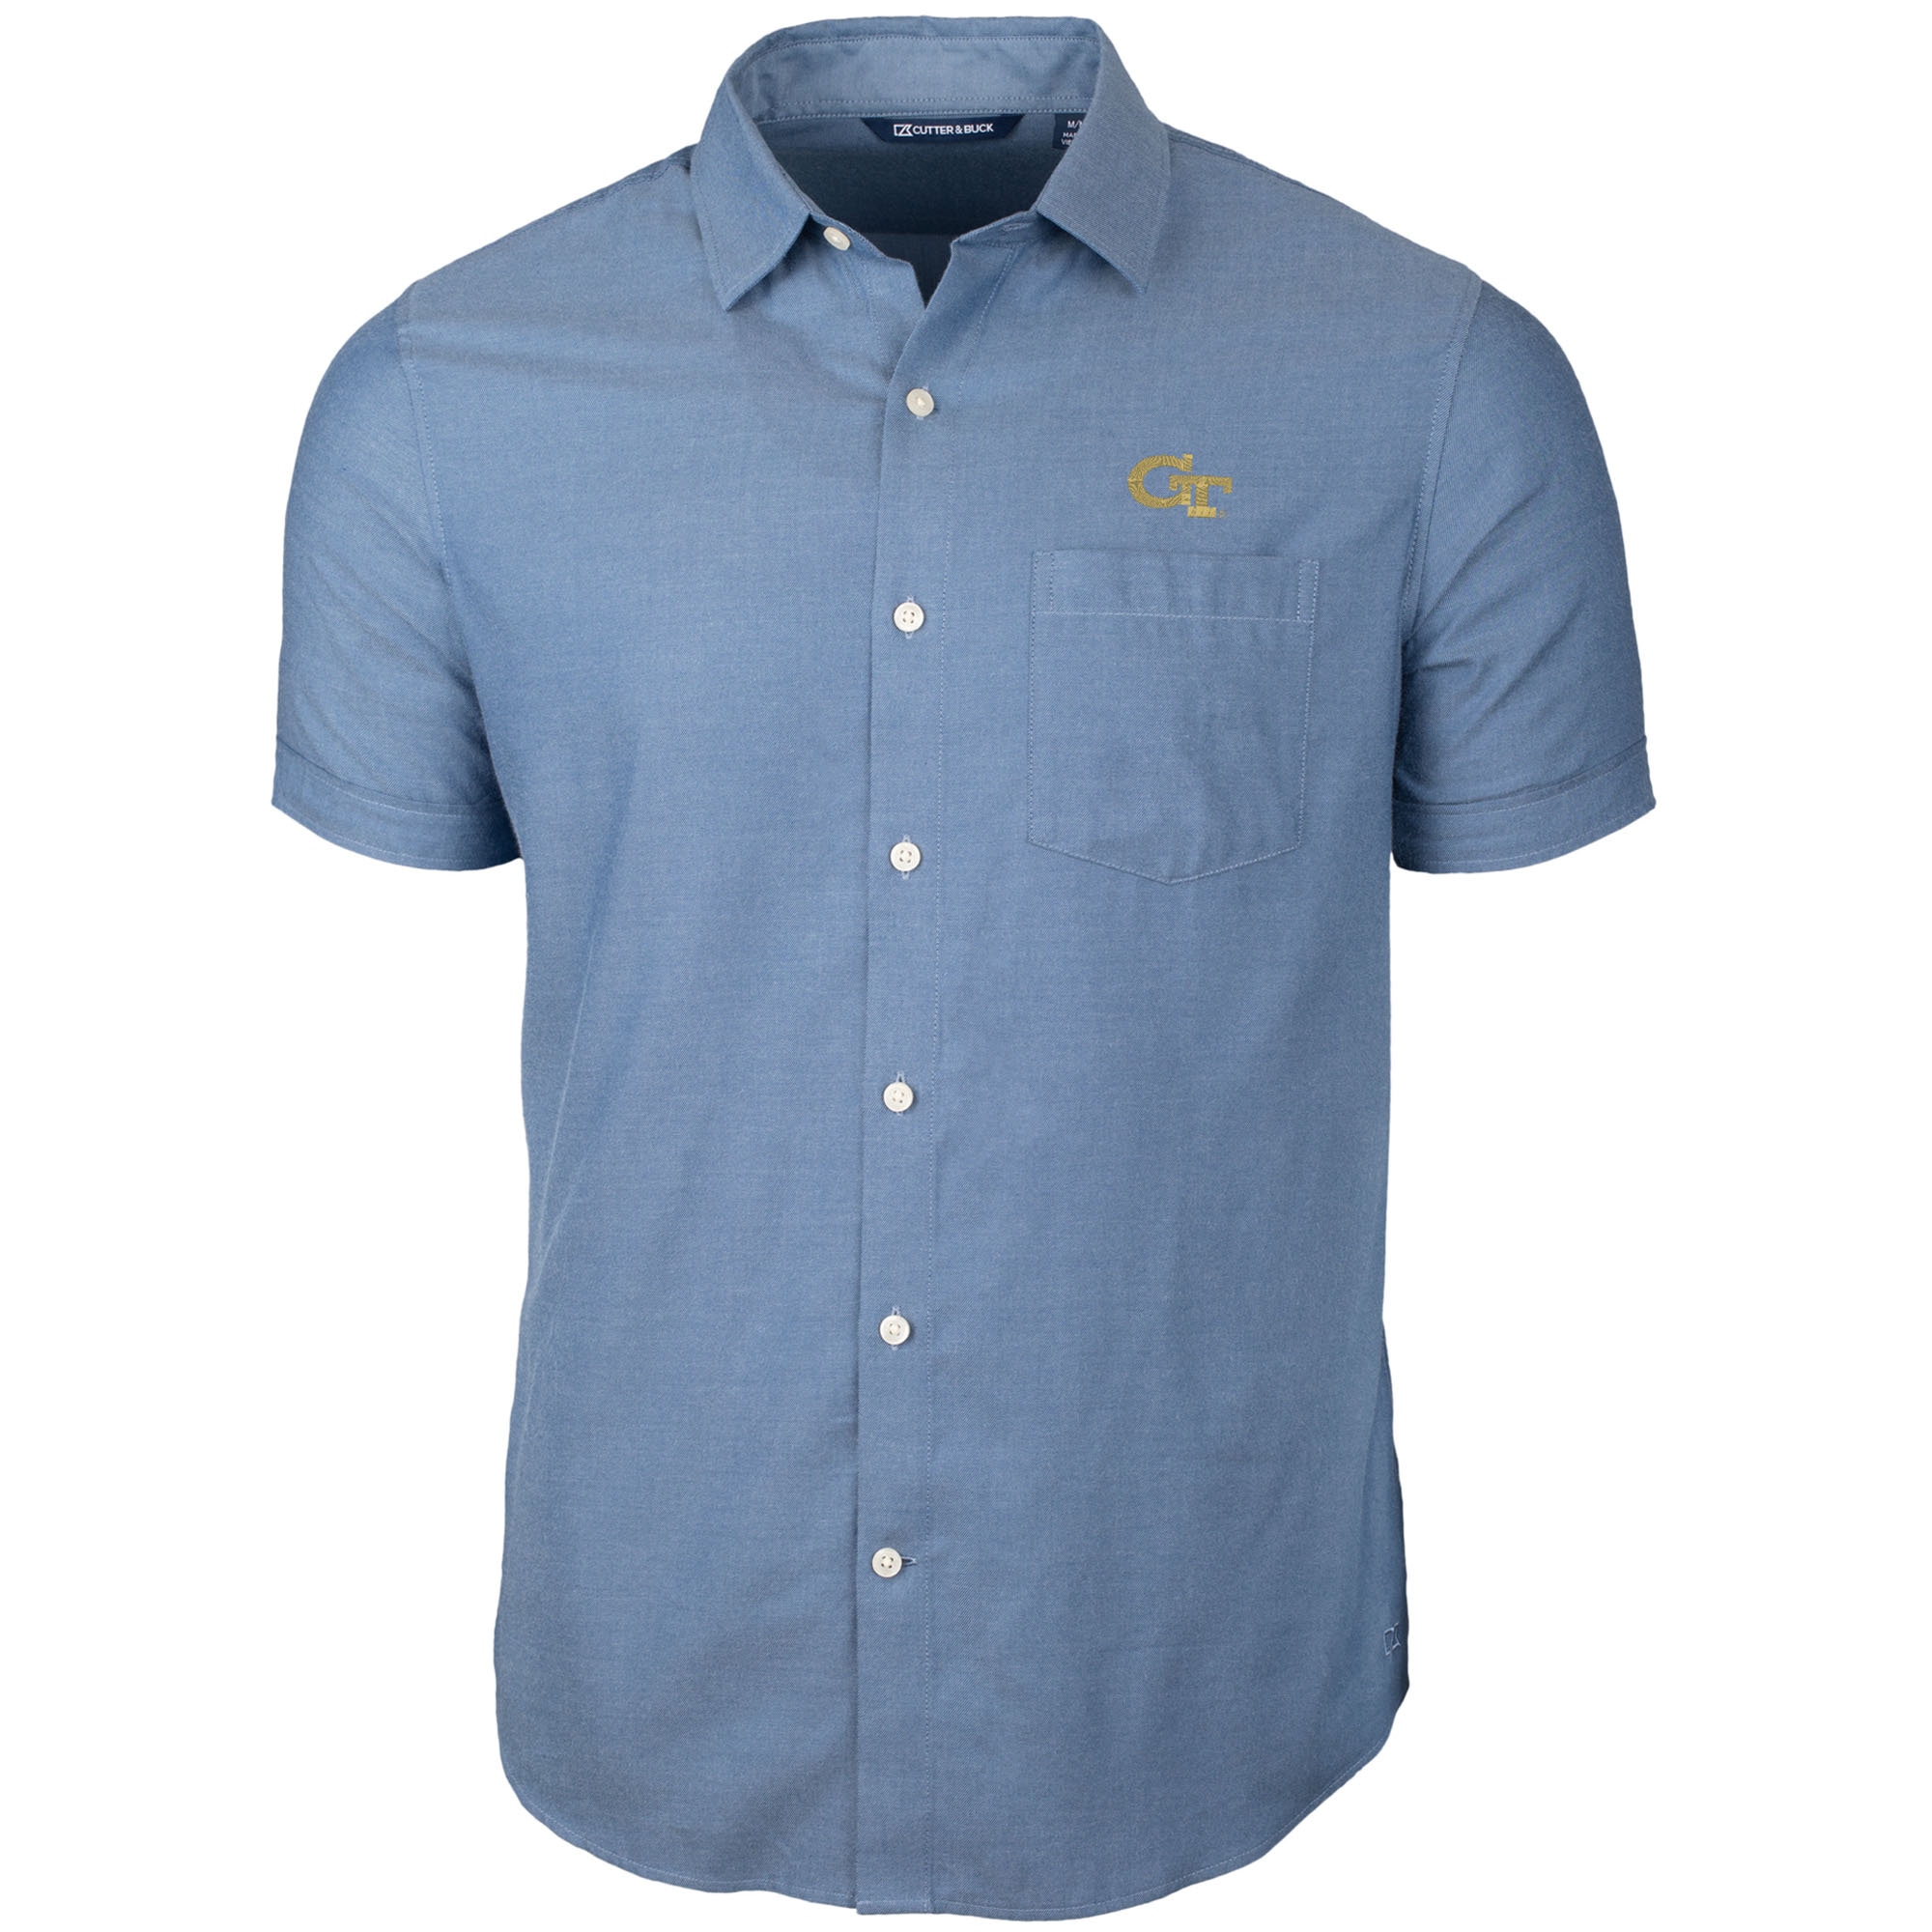 Men's Cutter & Buck Navy Georgia Tech Yellow Jackets Windward Twill Button-Up Short Sleeve Shirt - image 1 of 1